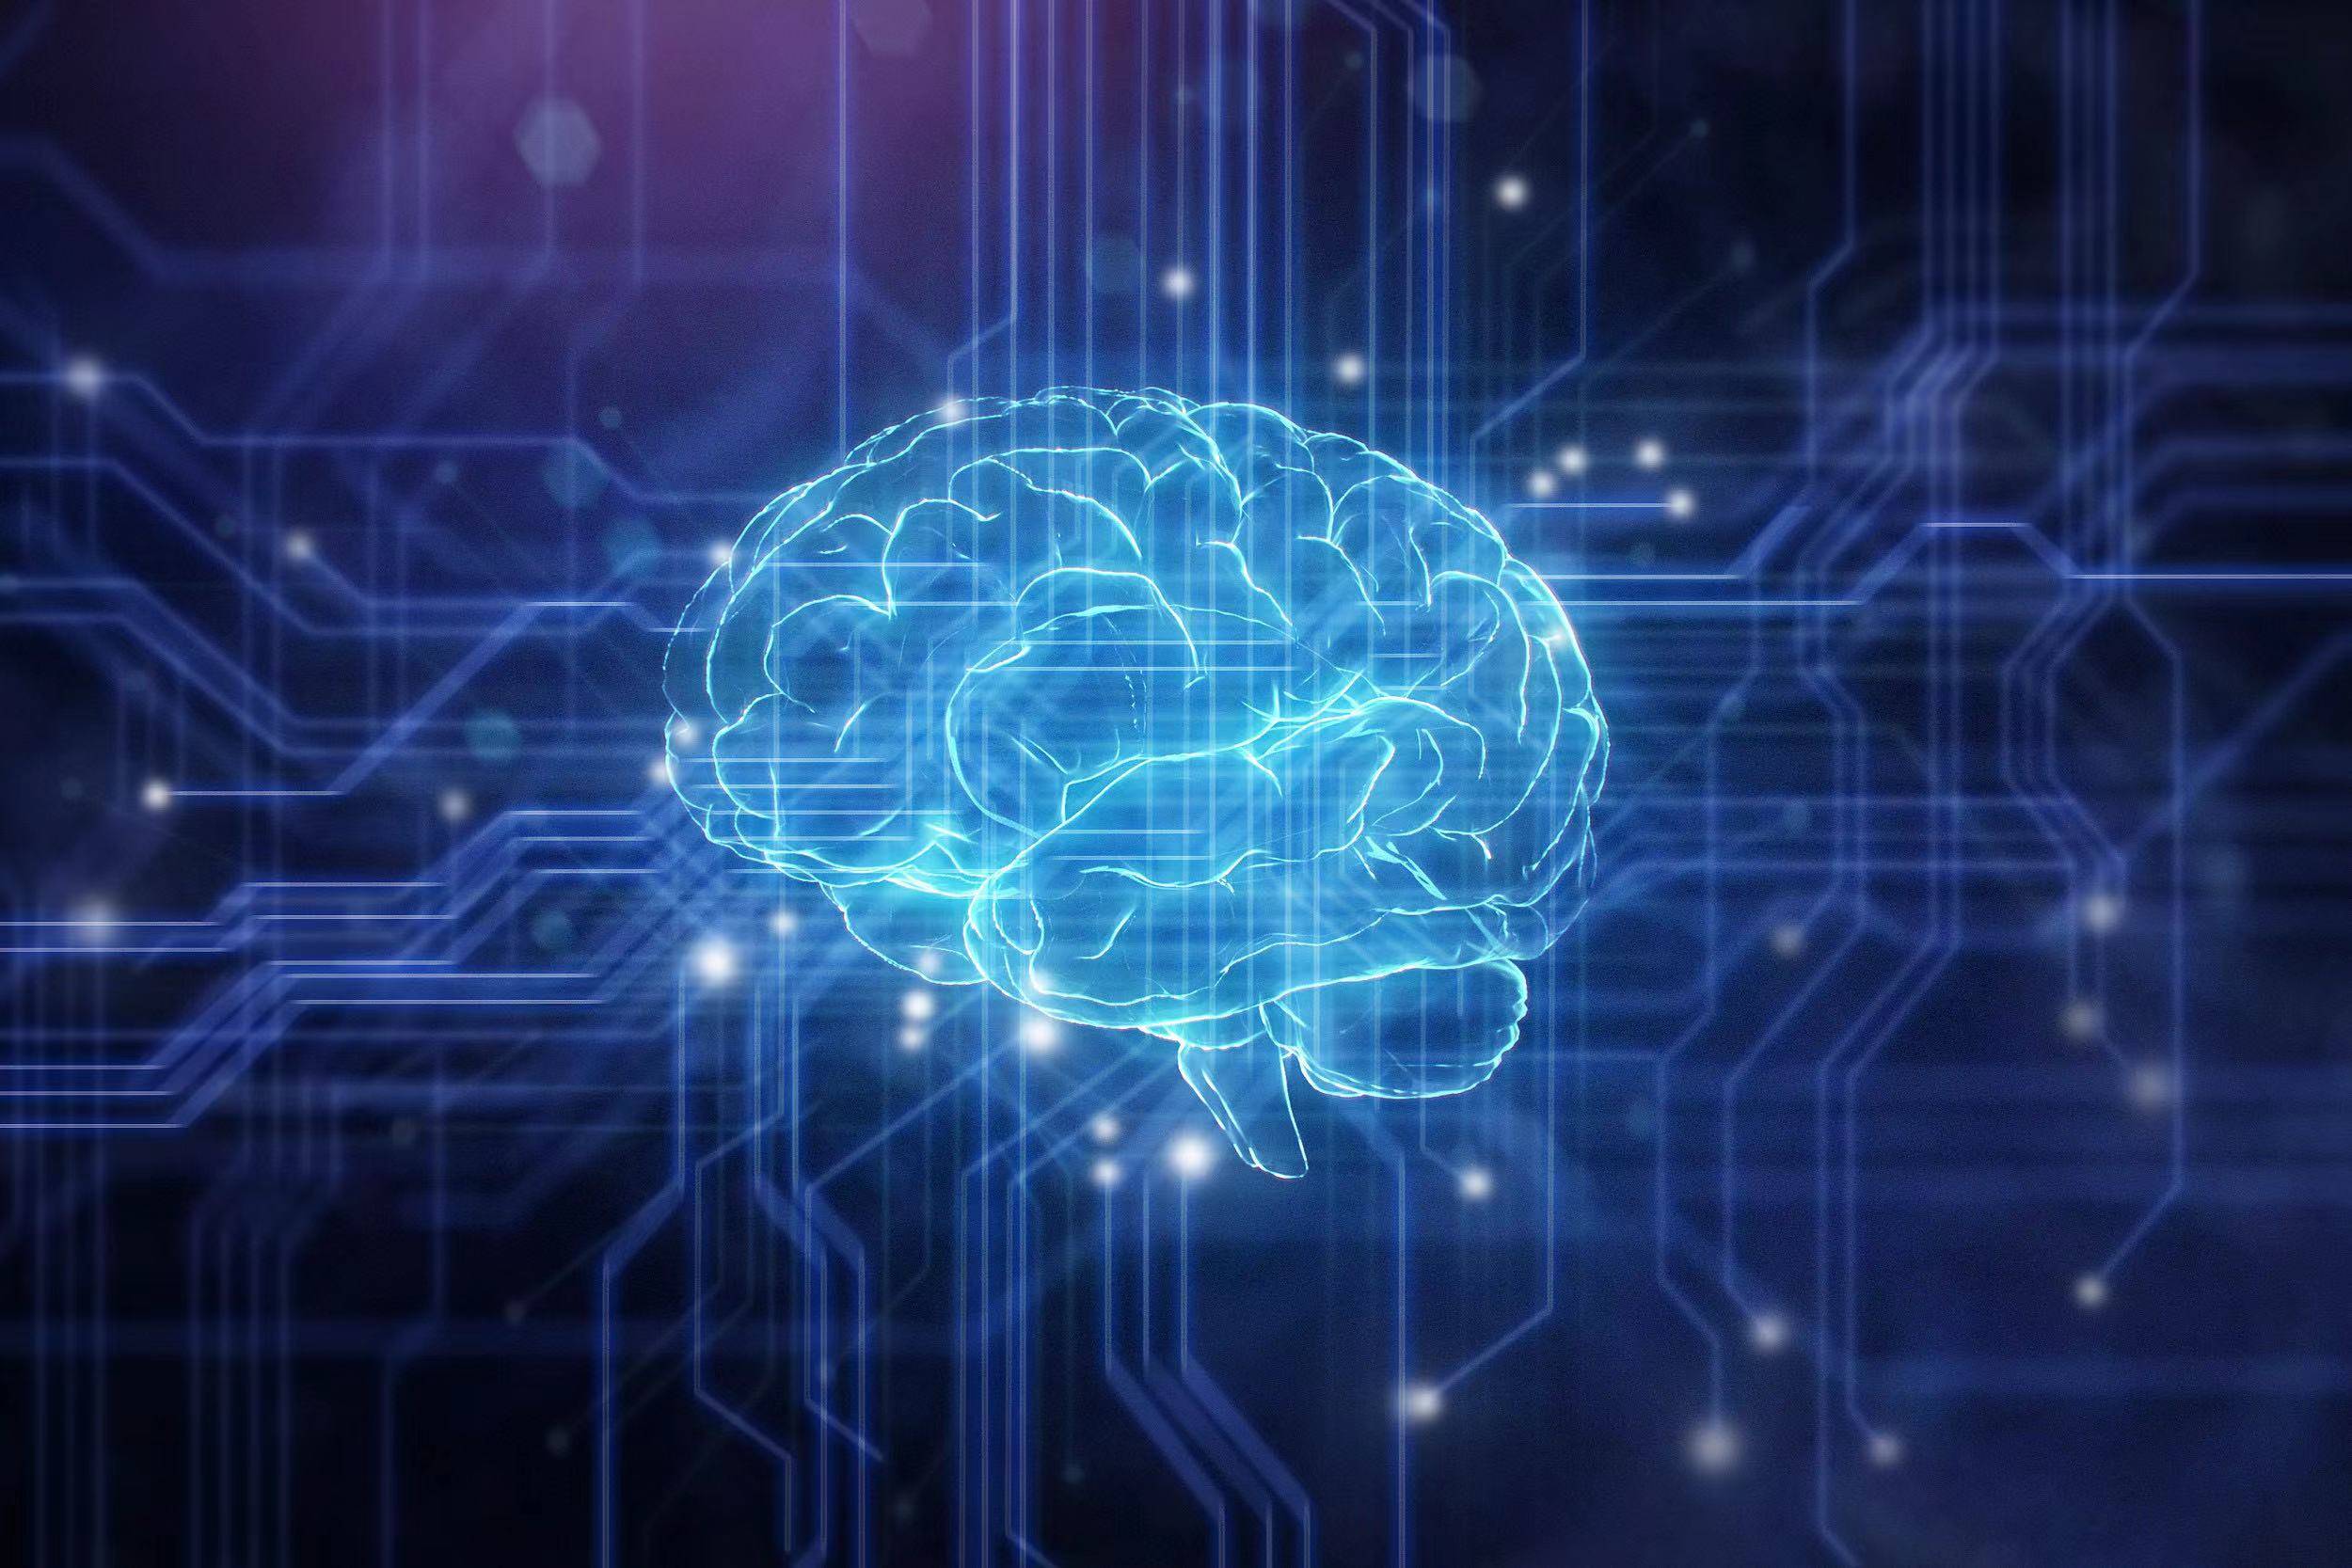 脑机接口技术将引领未来科技革命